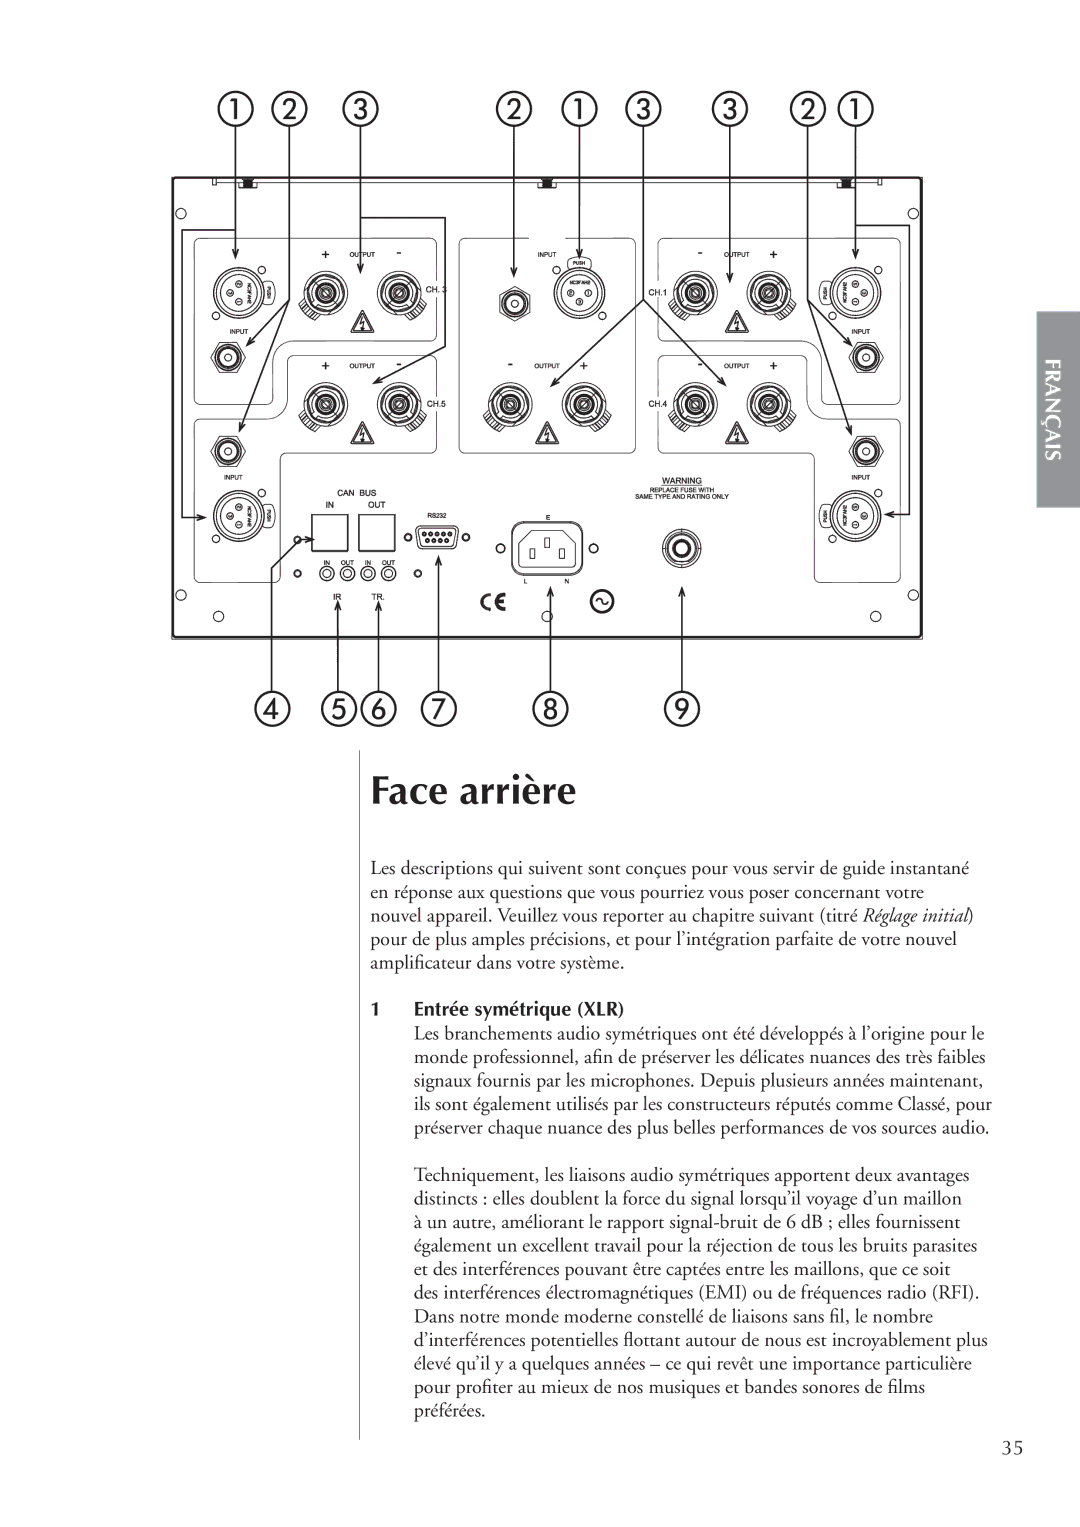 Classe Audio CA-5200 owner manual Face arrière, Entrée symétrique XLR 